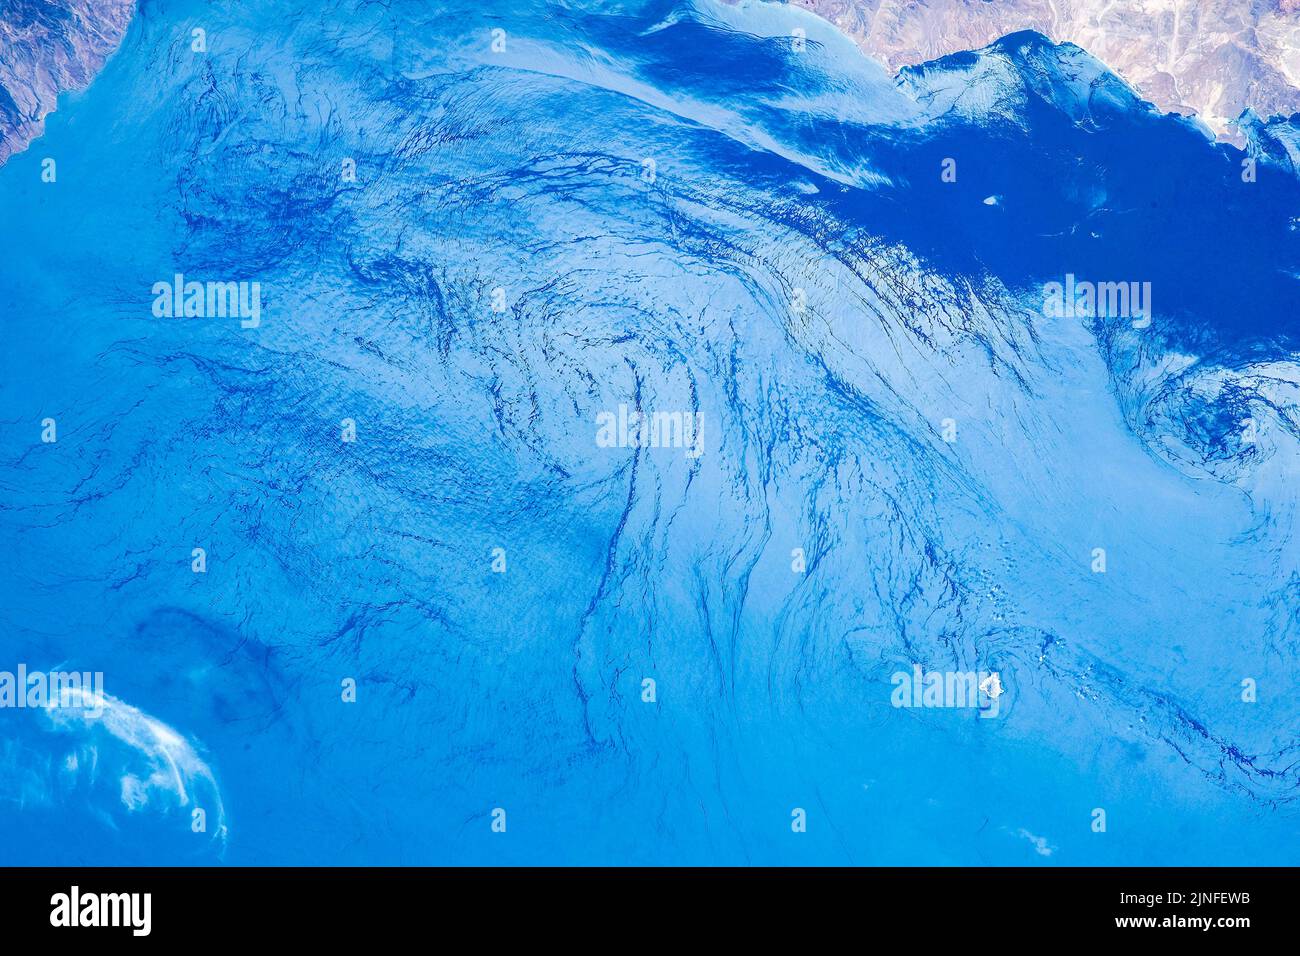 Türkisblaues Meerwasser. NASA-Nutzungsrichtlinien: https://www.nasa.gov/multimedia/guidelines/index.html Stockfoto